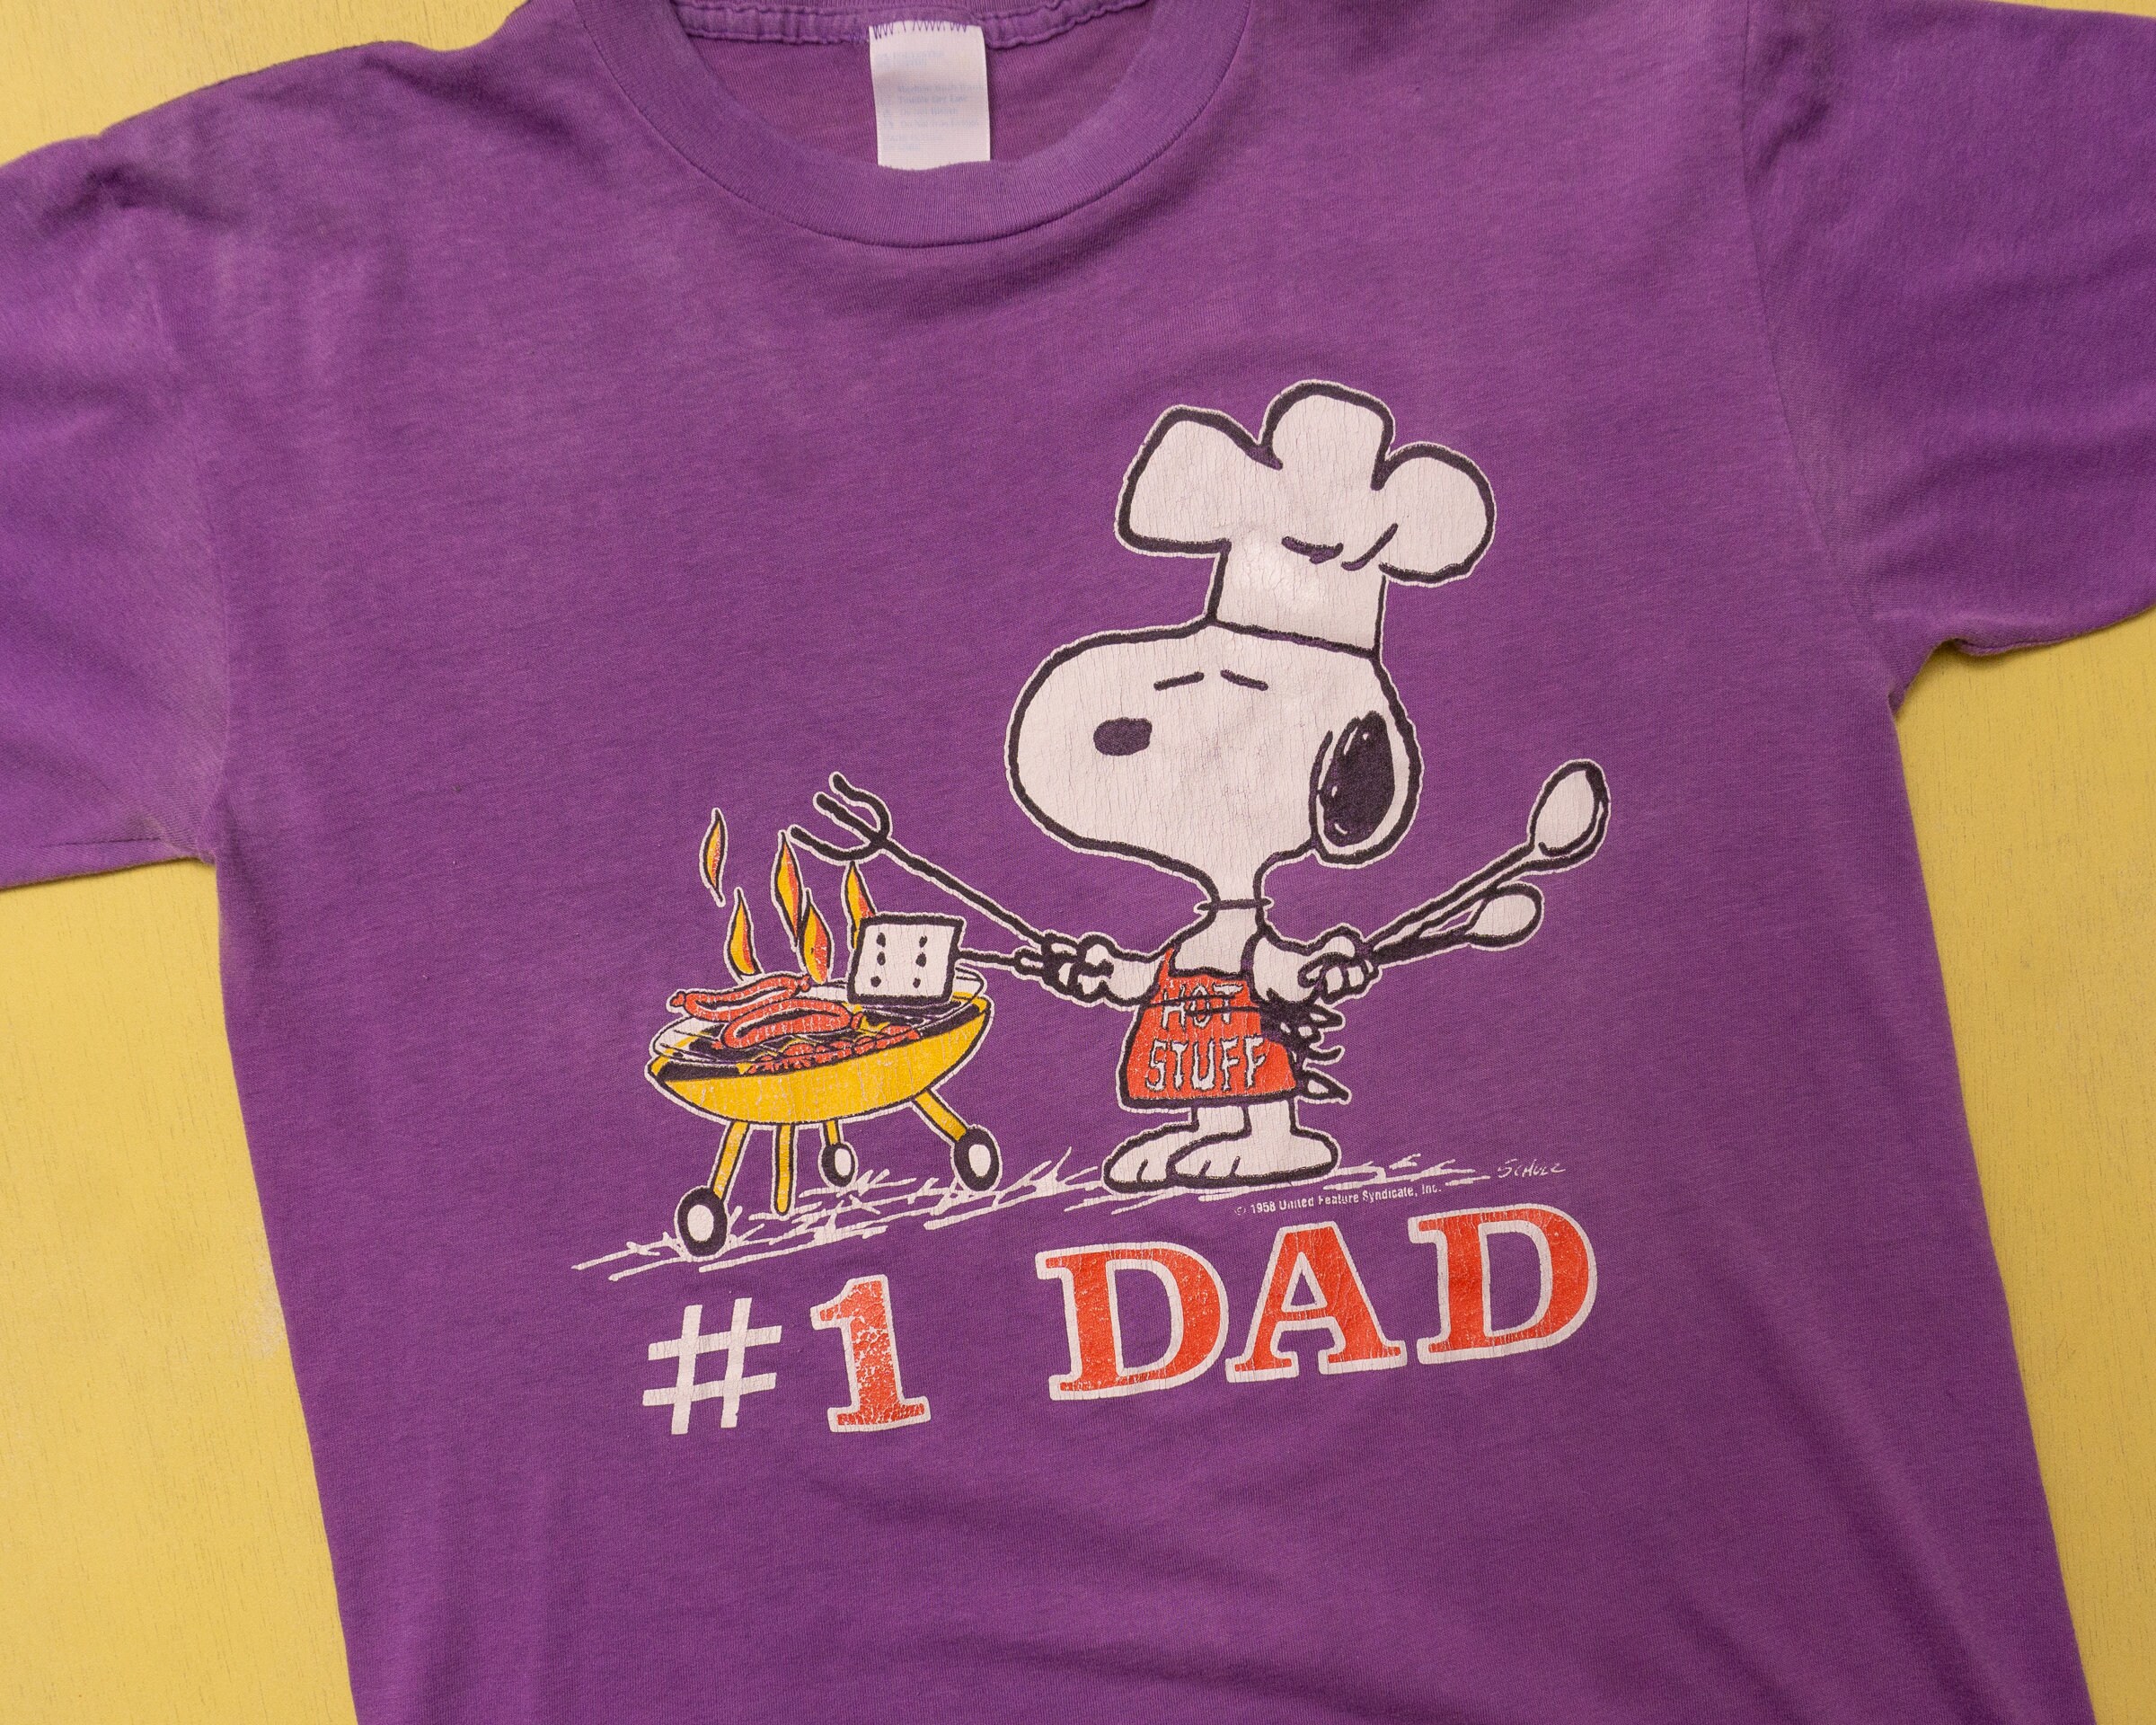 Ropa Ropa de género neutro para adultos Tops y camisetas Camisetas Camisetas estampadas Camiseta púrpura desteñida Camiseta Snoopy Vintage de los 80 Camiseta #1 de papá 